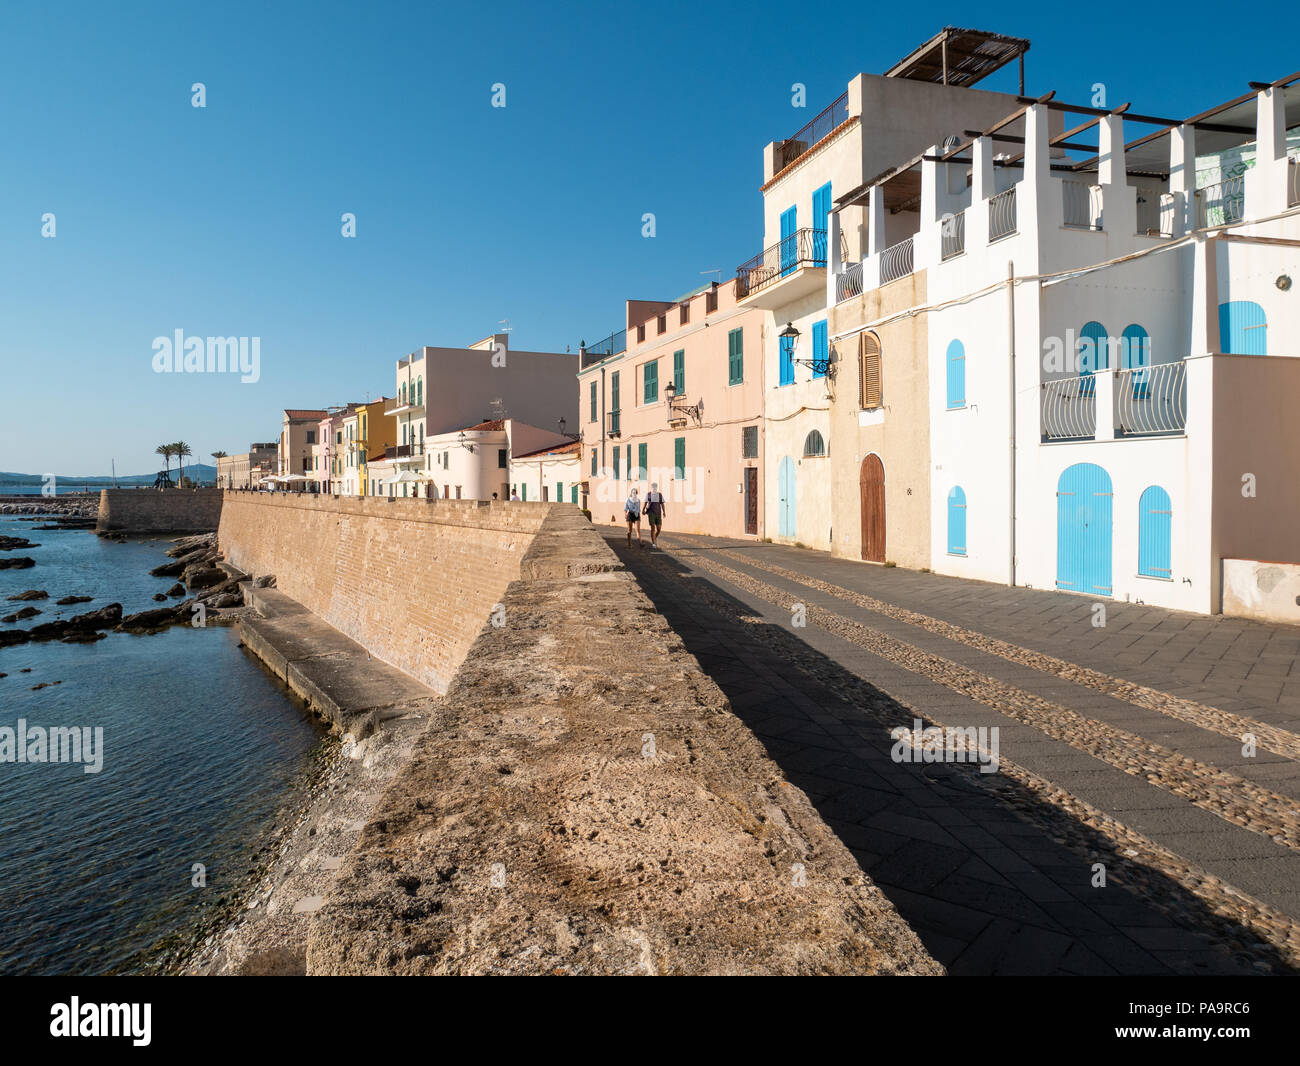 Promenade au bord de l'eau, Alghero, Sardaigne, Italie Banque D'Images